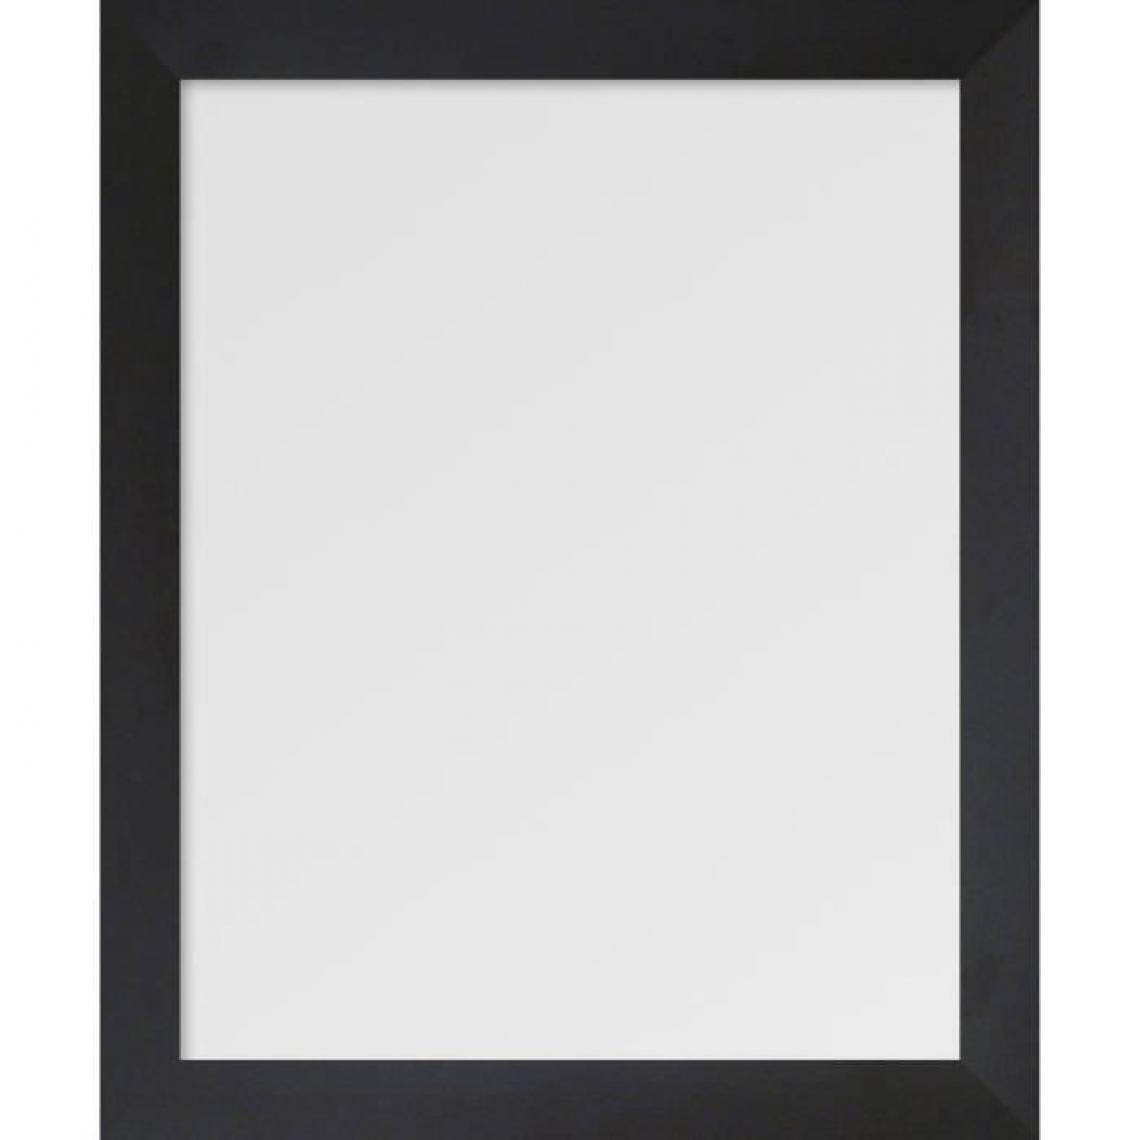 Artesania - BASIC Miroir rectangulaire 40x50 cm Noir - Miroirs